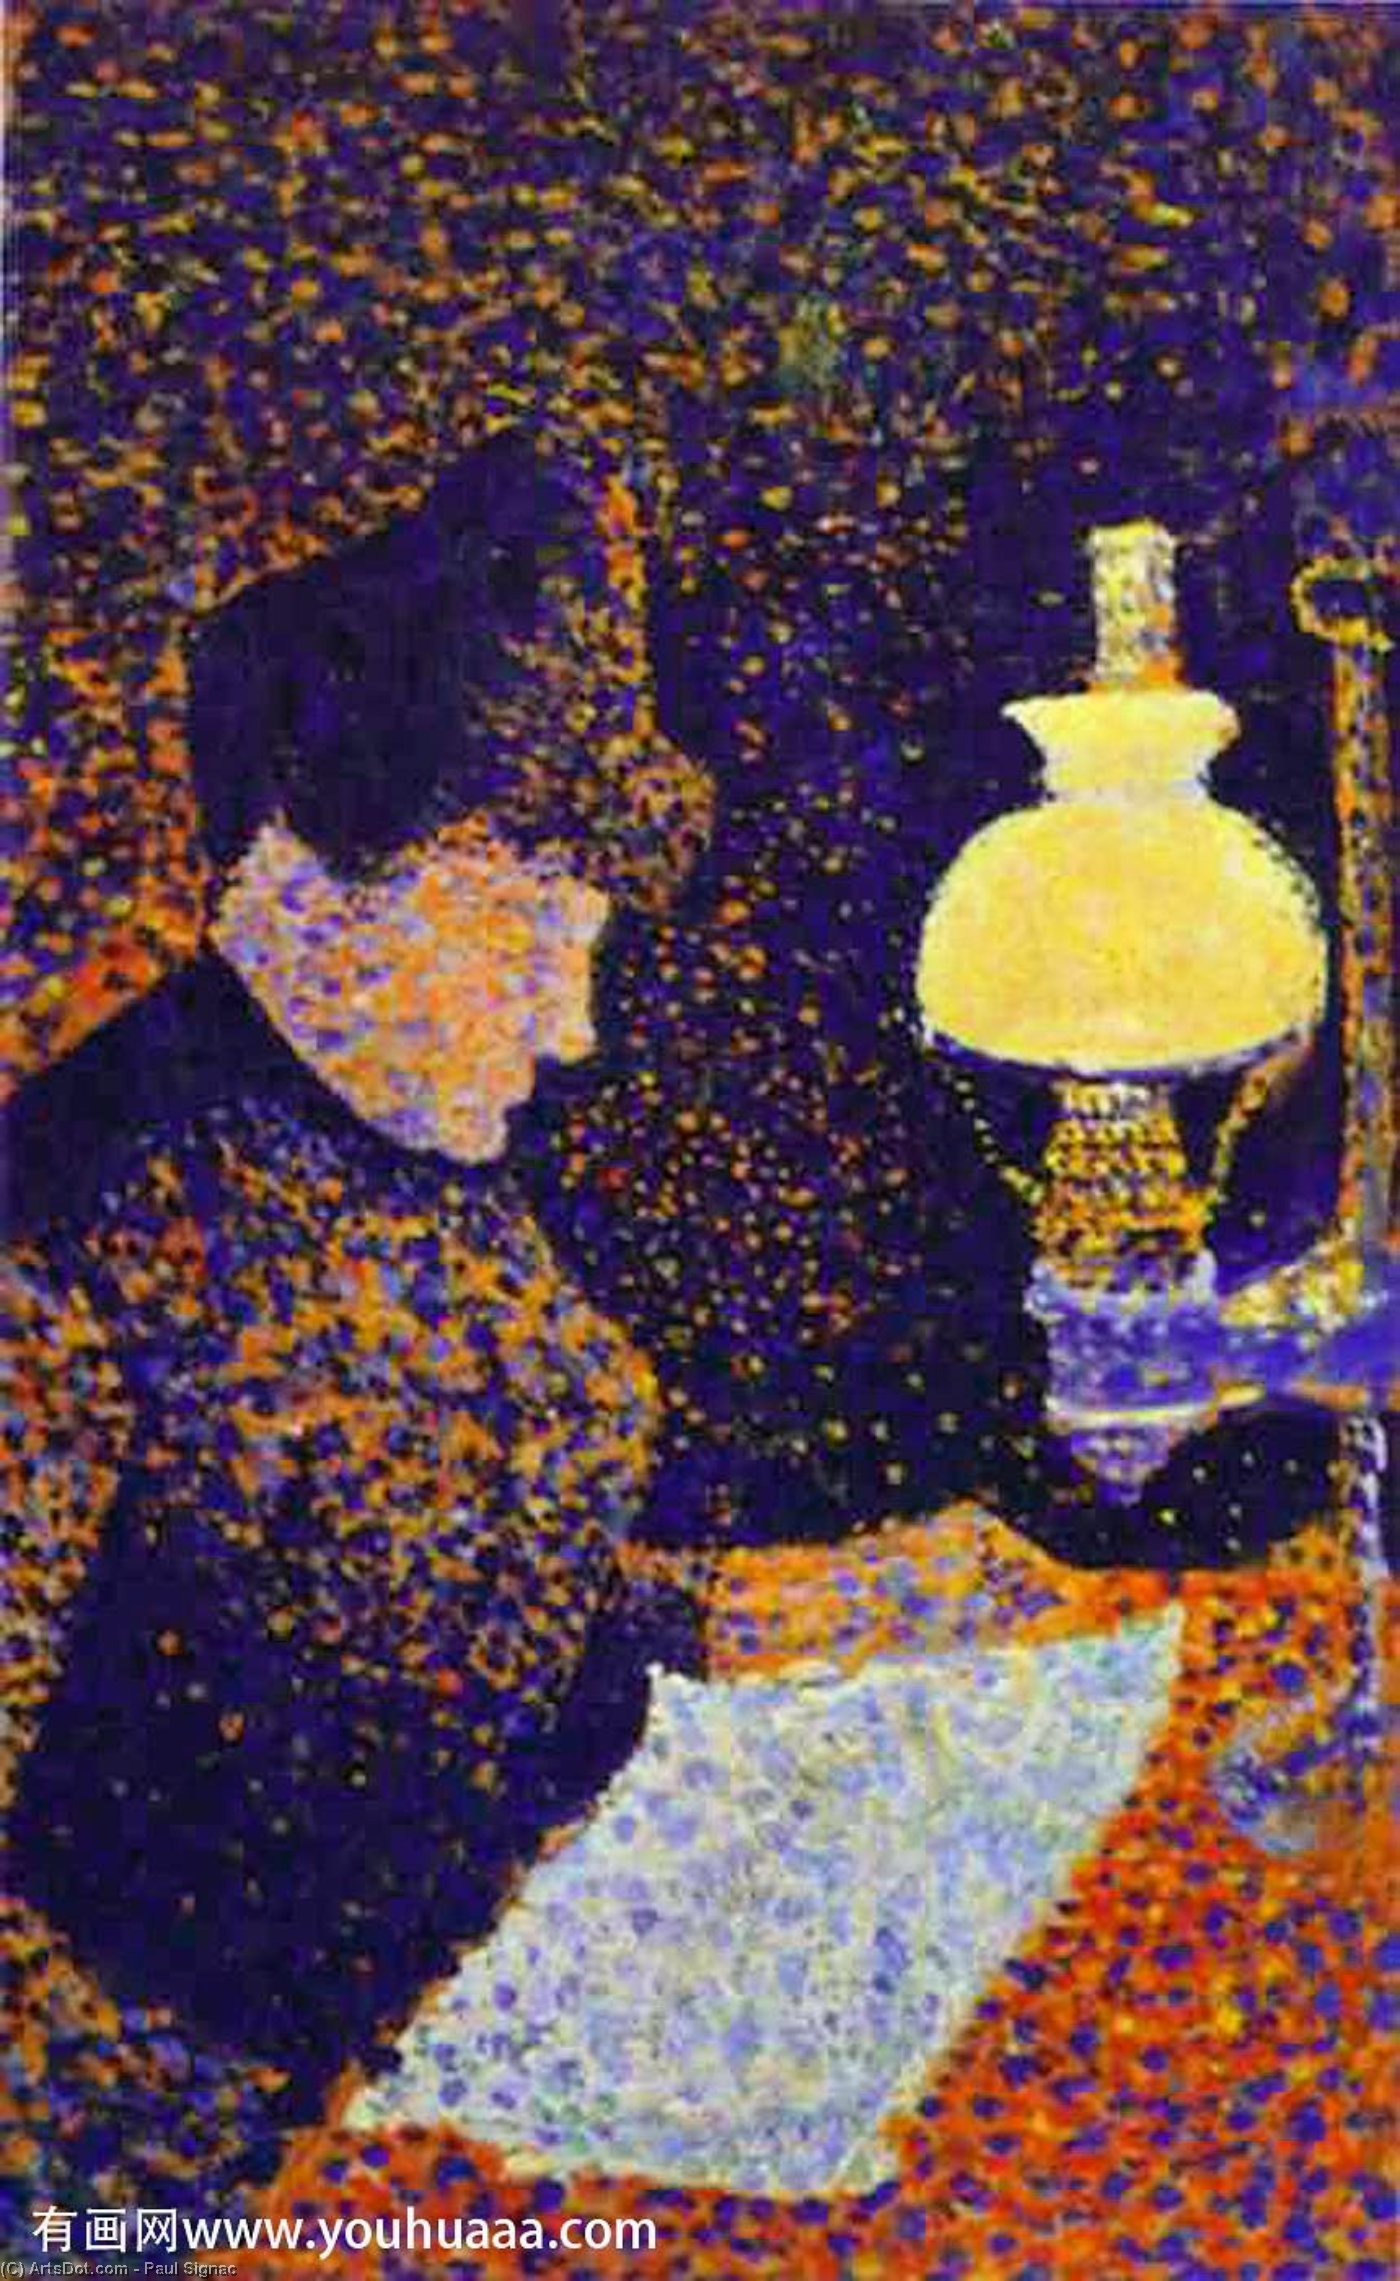 WikiOO.org - Encyclopedia of Fine Arts - Lukisan, Artwork Paul Signac - Woman by Lamplight